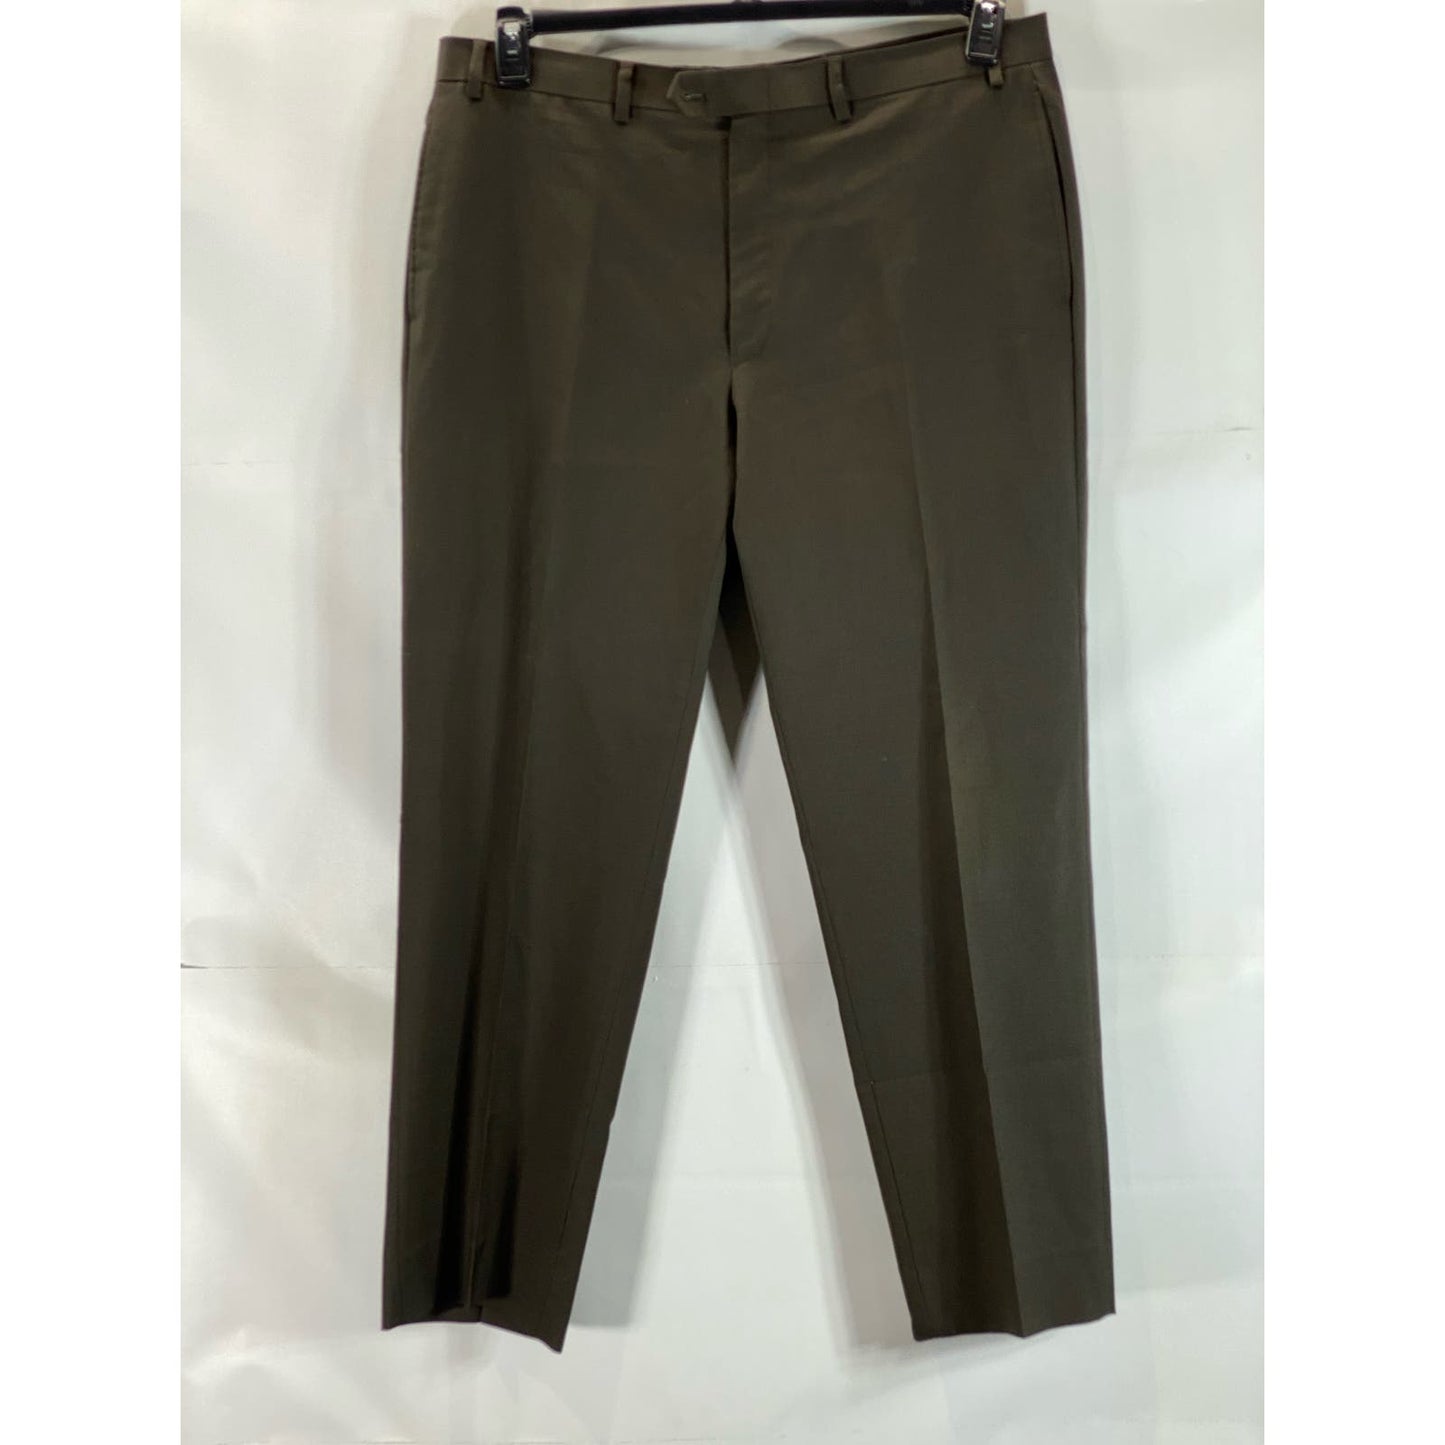 LAUREN RALPH LAUREN Men's Brown Wool Total Comfort Flat Front Pants SZ 38X32